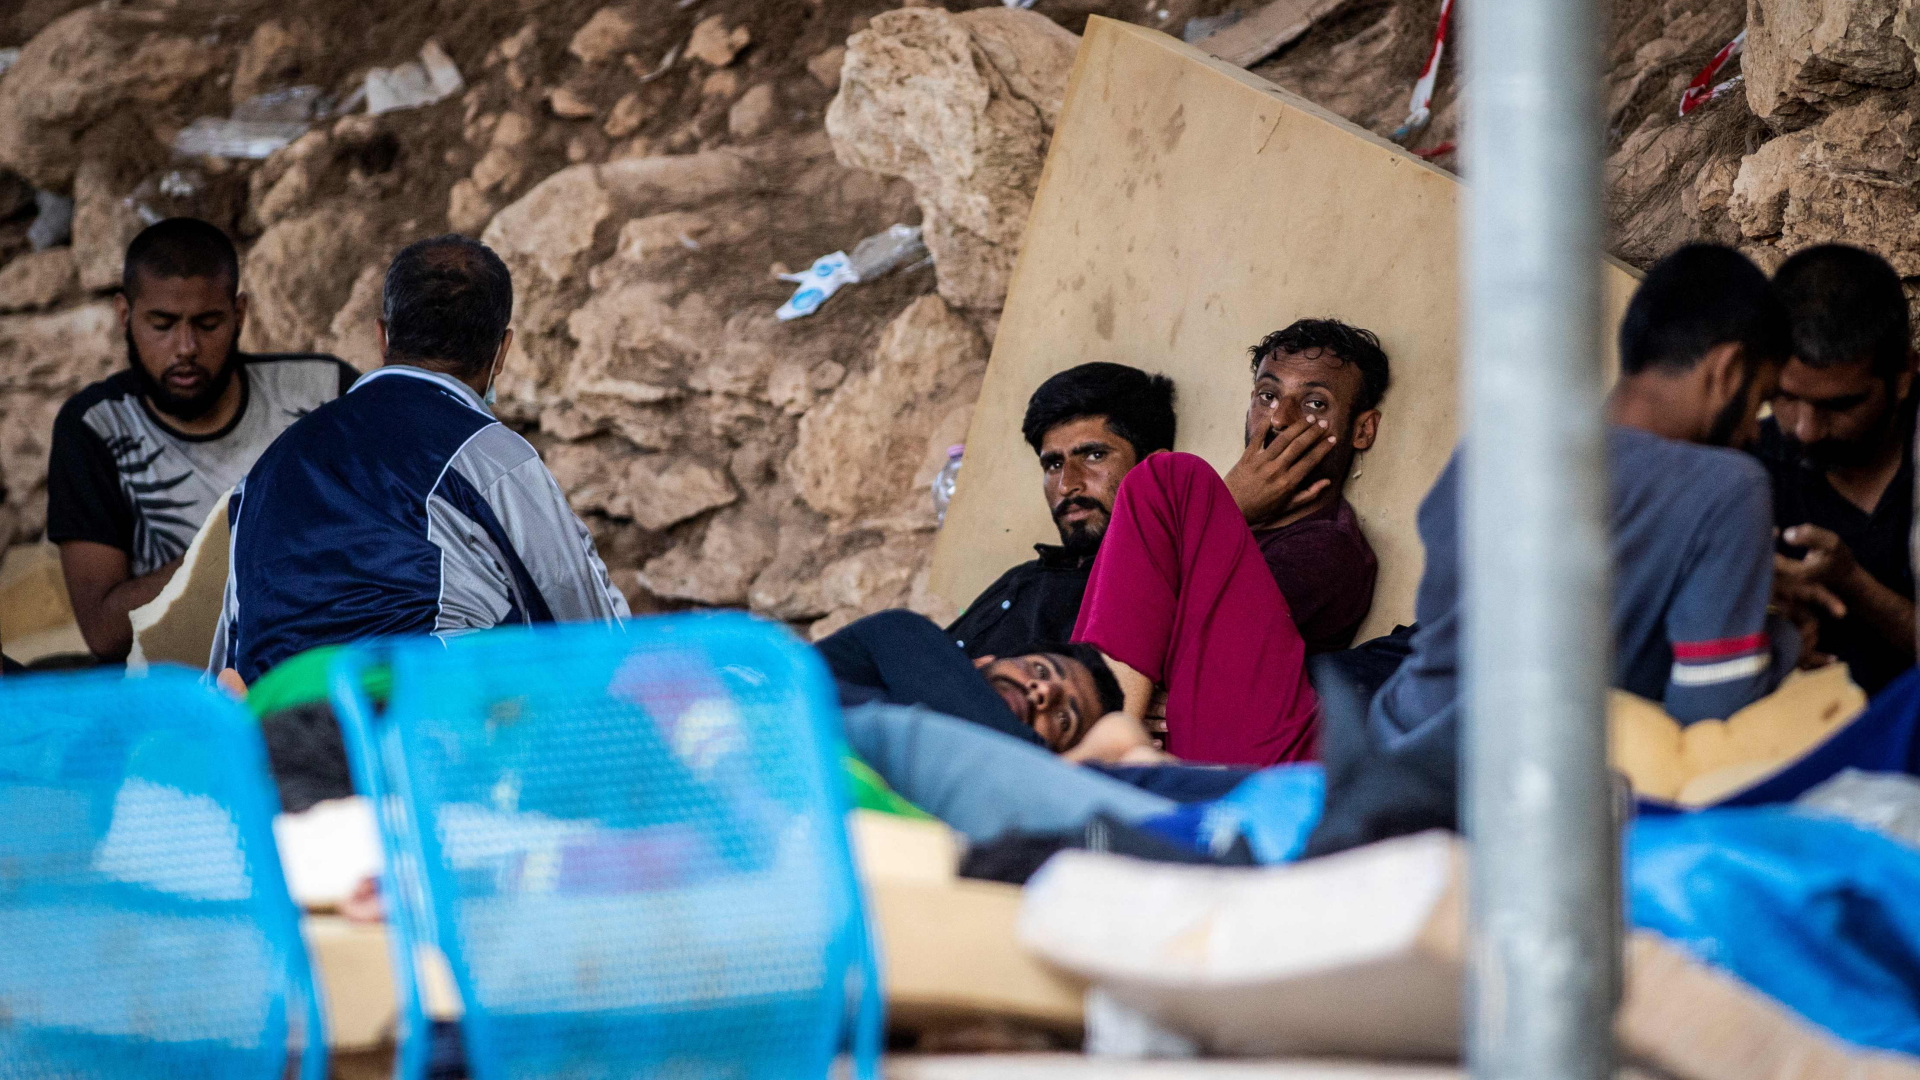 Rabbia per le condizioni: evacuato il campo migranti di Lampedusa